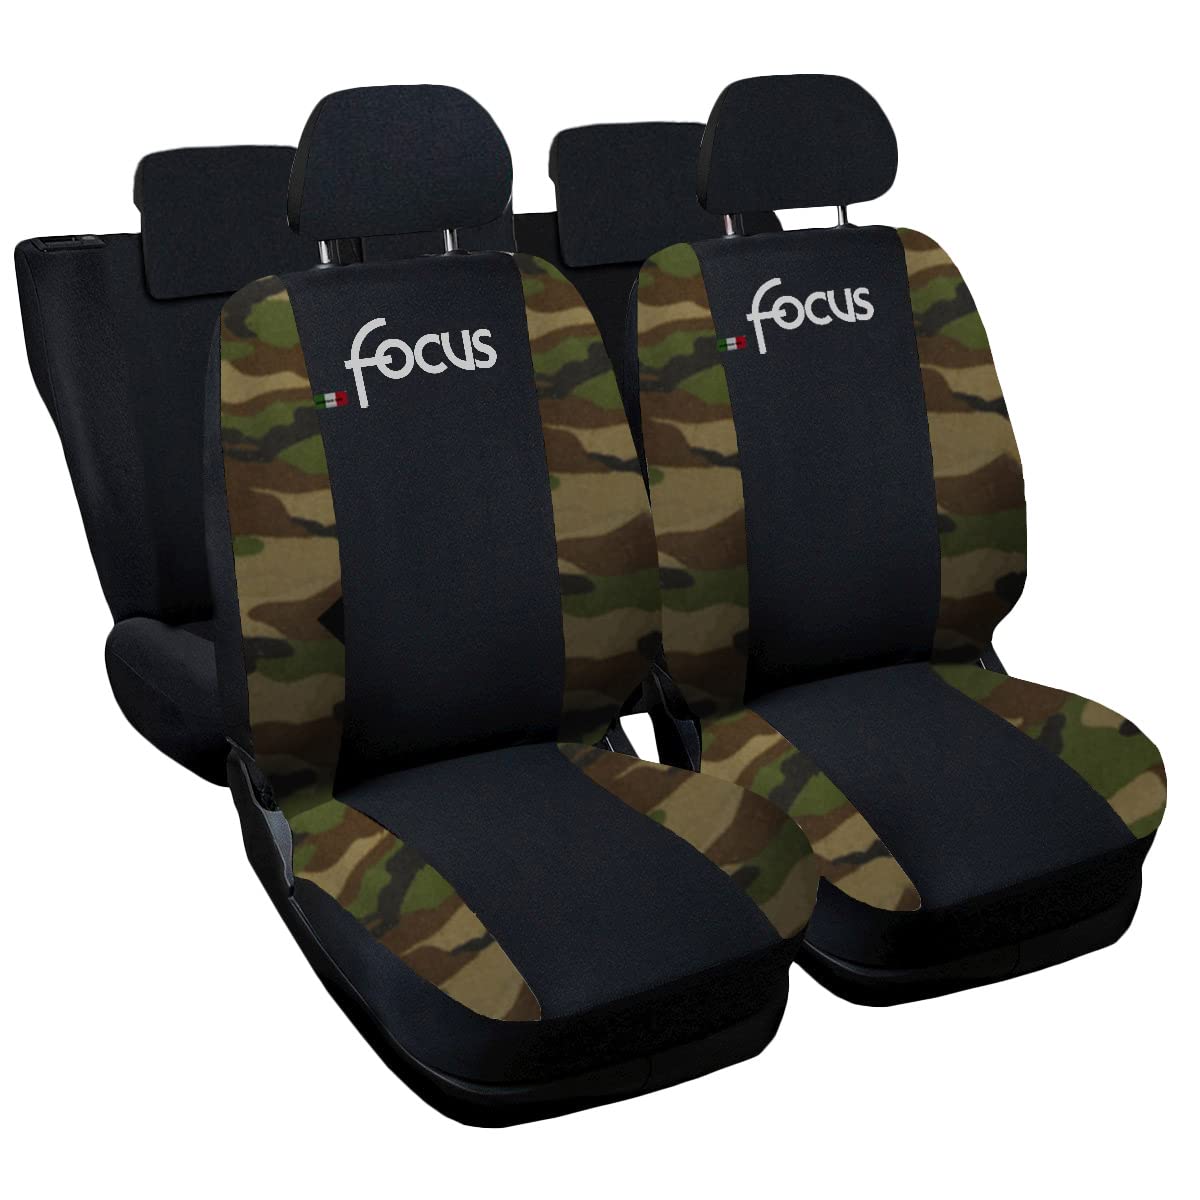 Lupex Shop Autositzbezüge kompatibel mit Focus, Made in Italy, Polyestergewebe, kompletter Satz Vorder- und Rücksitze (Schwarz - Camouflag Grün) von Lupex Shop